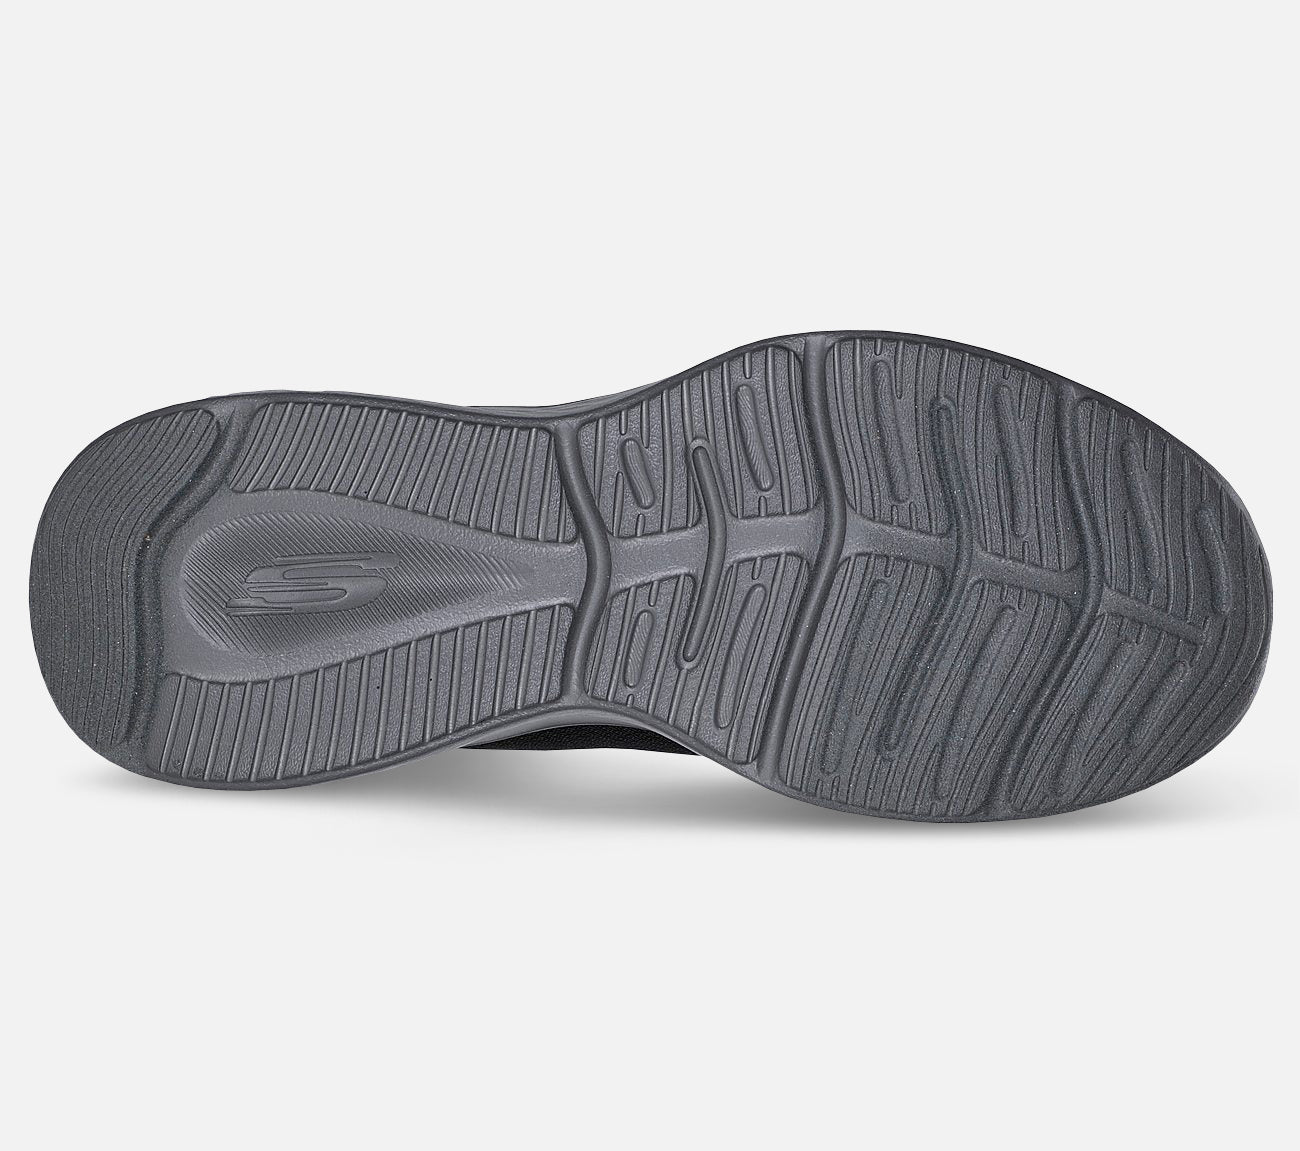 Skech-Lite Pro Shoe Skechers